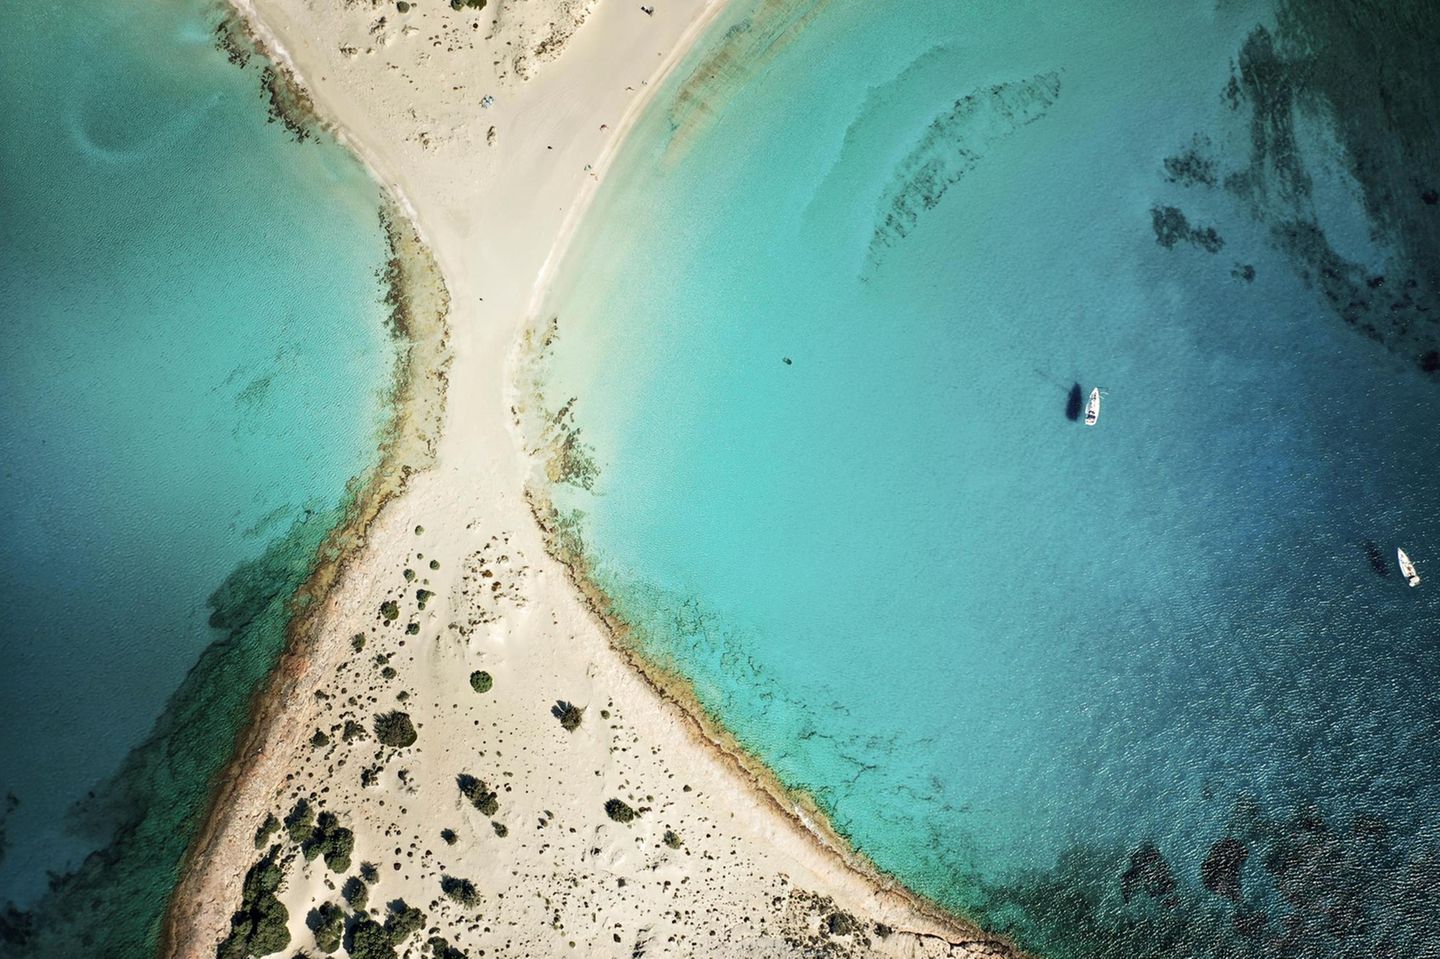 Vor der Insel Elafonisos ragt der Strand in Form einer Eieruhr ins Meer und teilt es in zwei Buchten. Die Insel liegt südlich des Peloponnes. Und wie in einer Eieruhr ist der Sand feinkörnig und beinah weiß